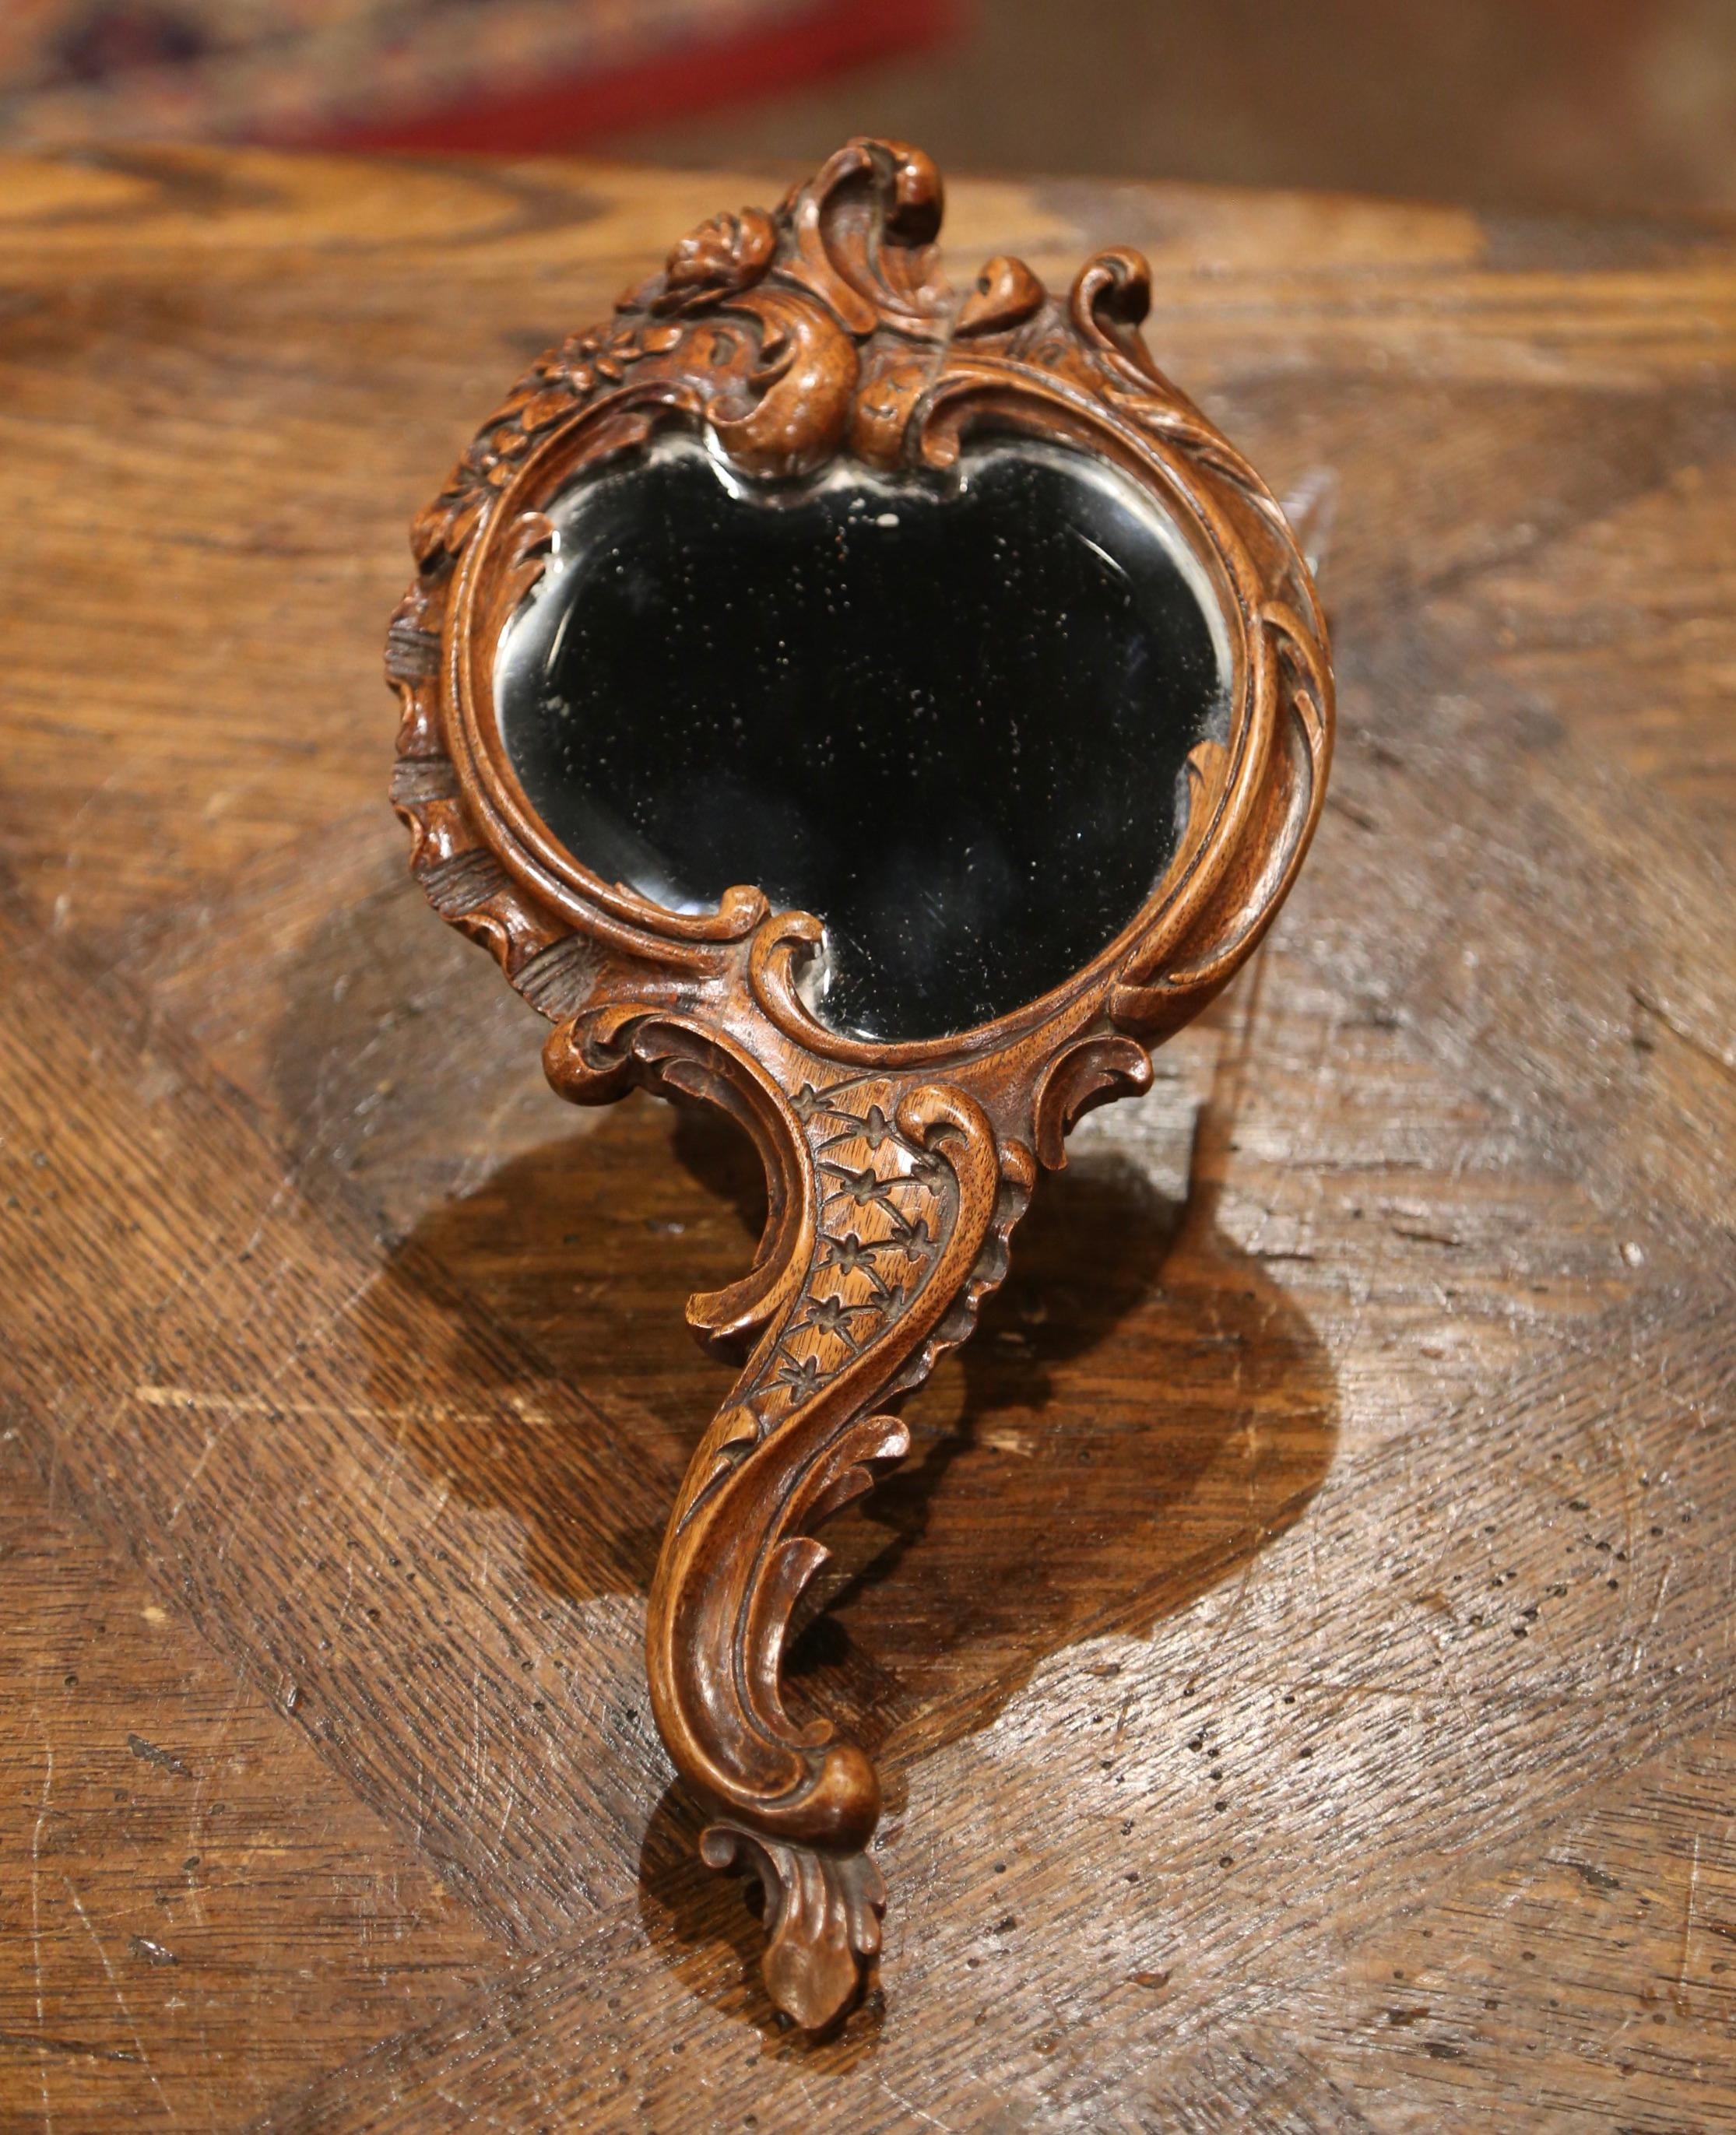 Fabriqué en France vers 1870, l'ancien miroir à main de style Louis XV avec une élégante poignée serpentine, présente des motifs floraux et de feuilles sculptés à la main dans tout le cadre ; le miroir de courtoisie a le verre au mercure biseauté